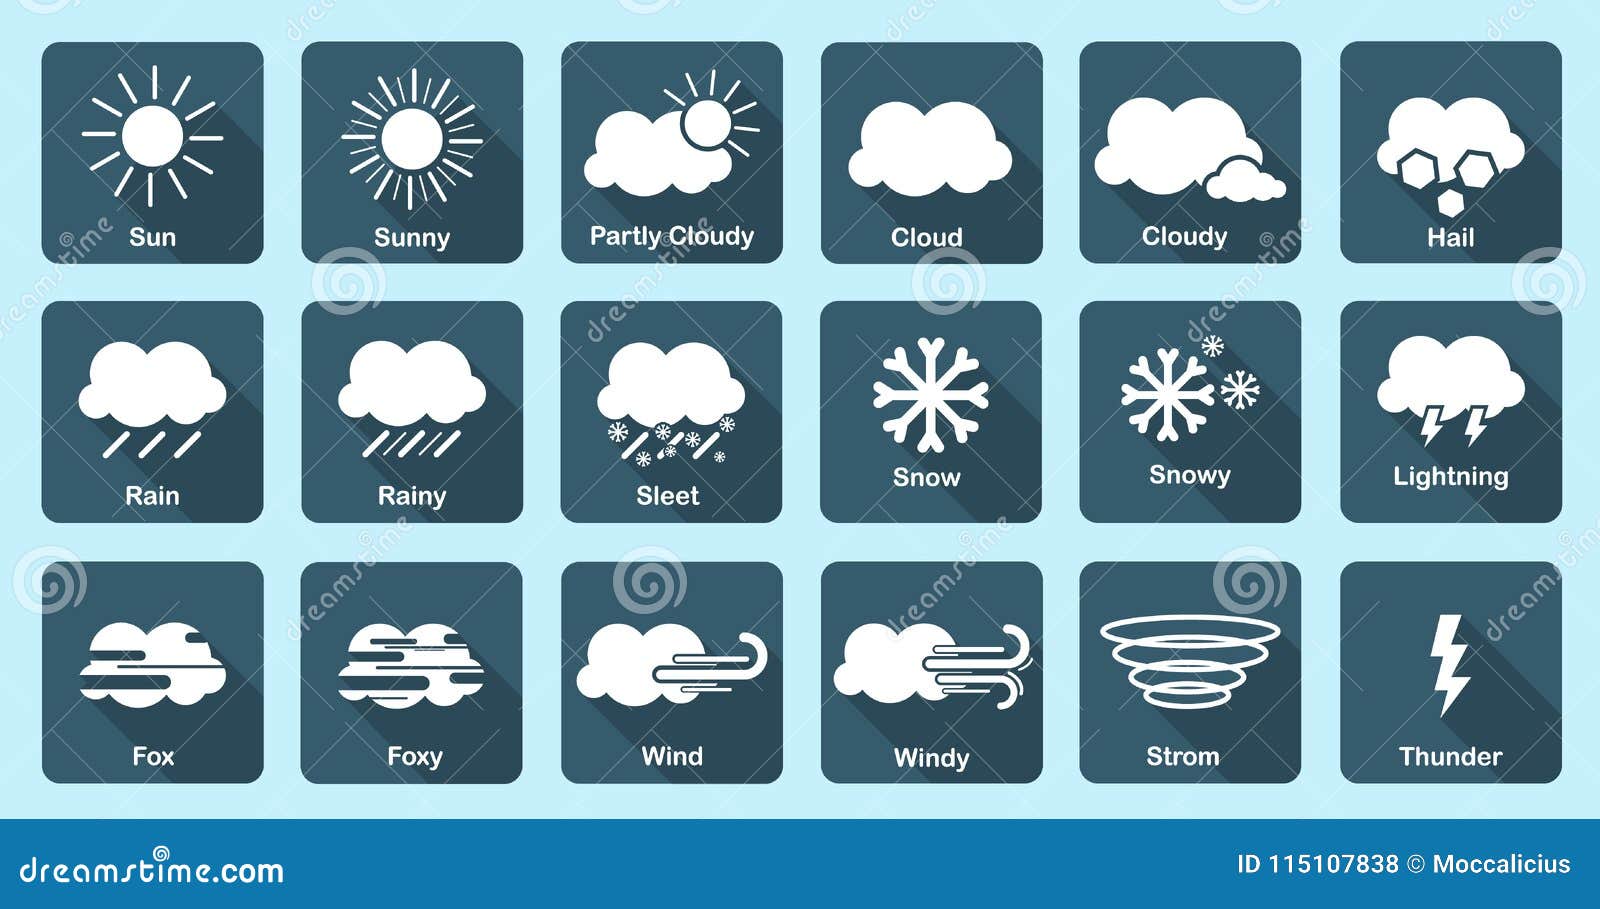 Ясно обозначение погоды. Знаки погоды. Значки погоды. Значки обозначения осадков.